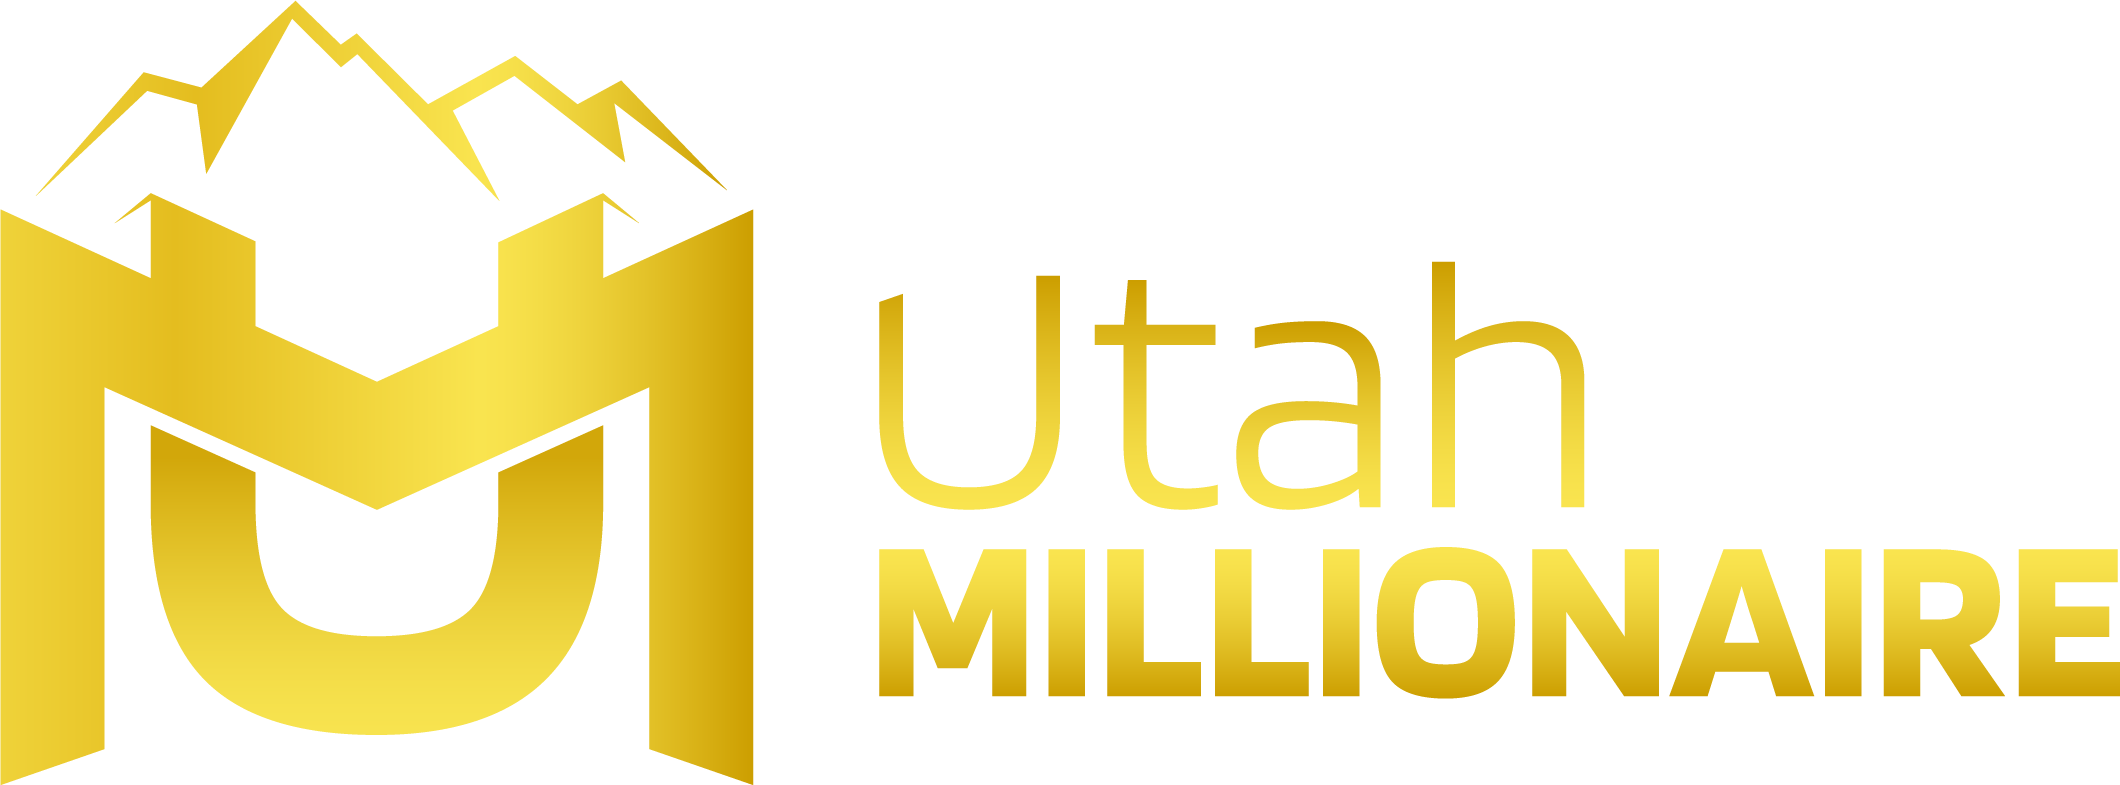 Utah Millionaire